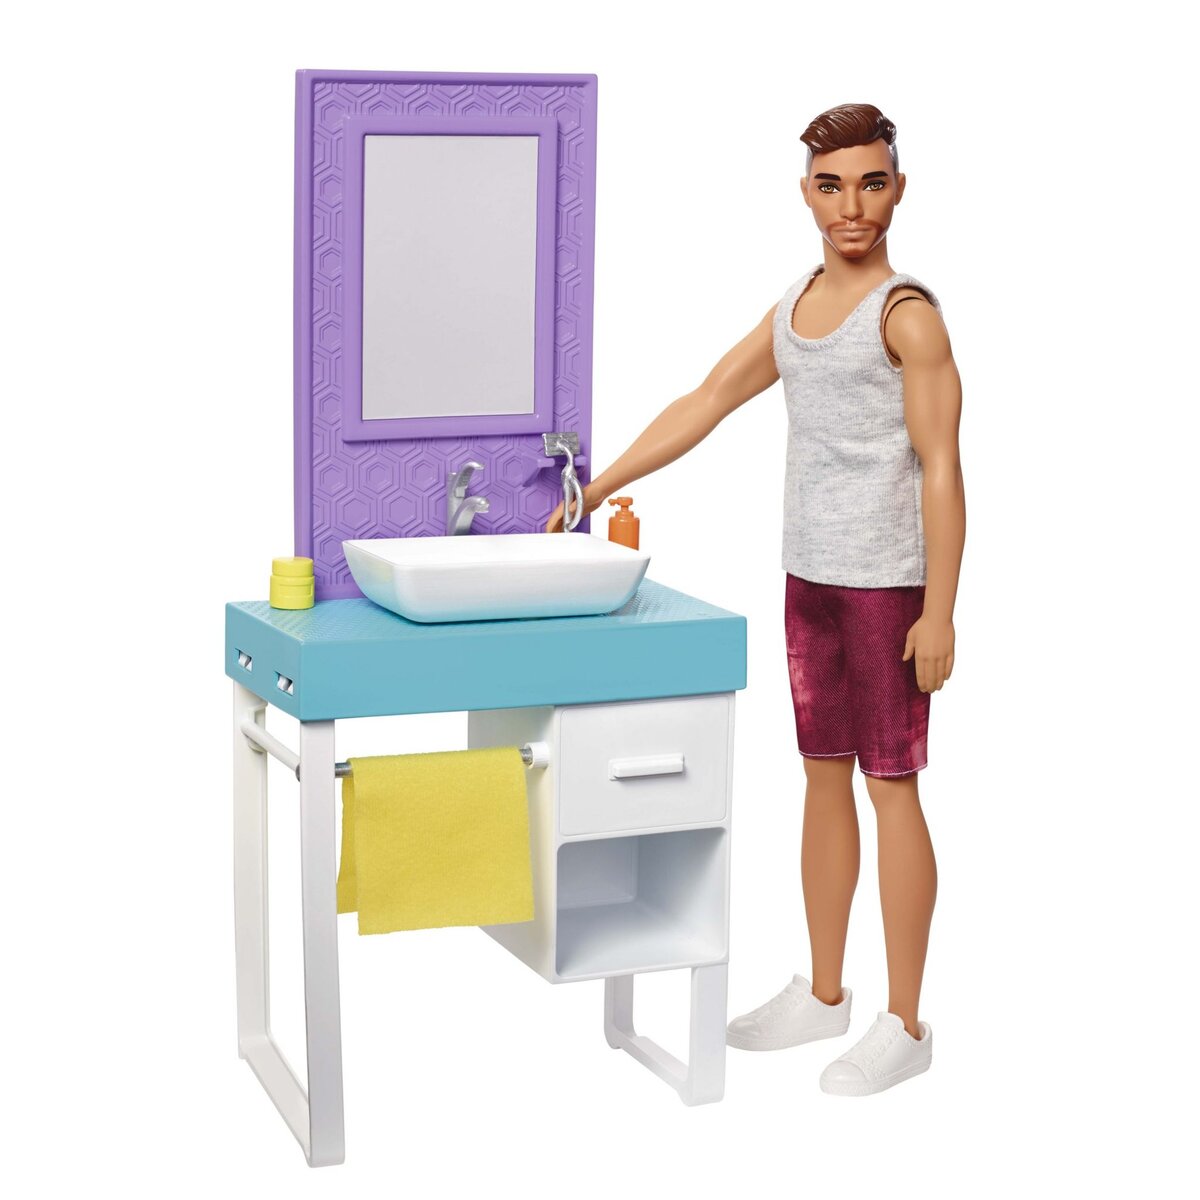 BARBIE Coffret Ken salle de bain avec mobilier et accessoires - Barbie